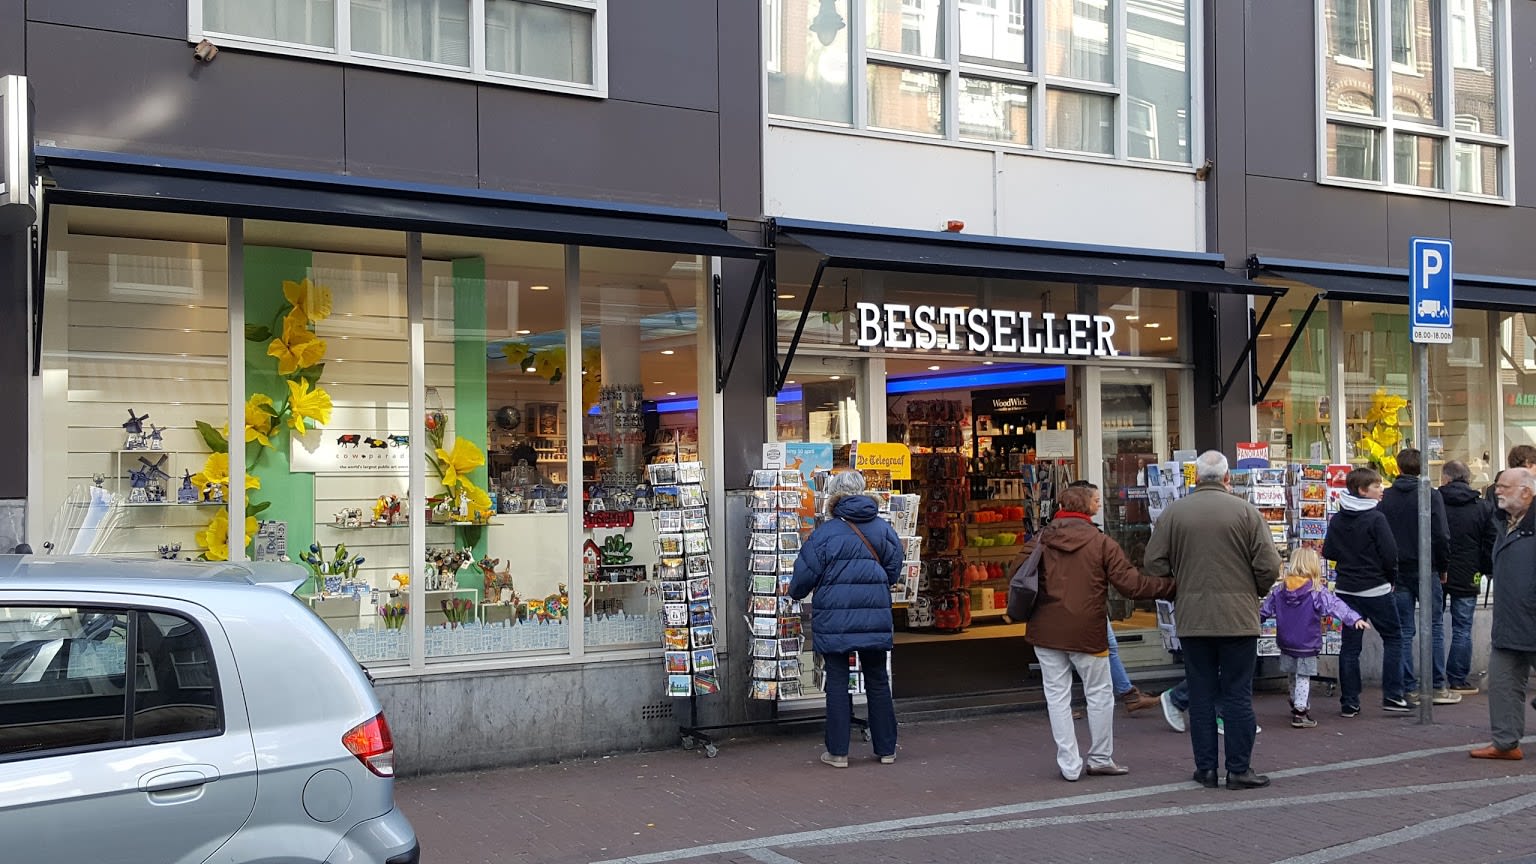 Bestseller Amsterdam